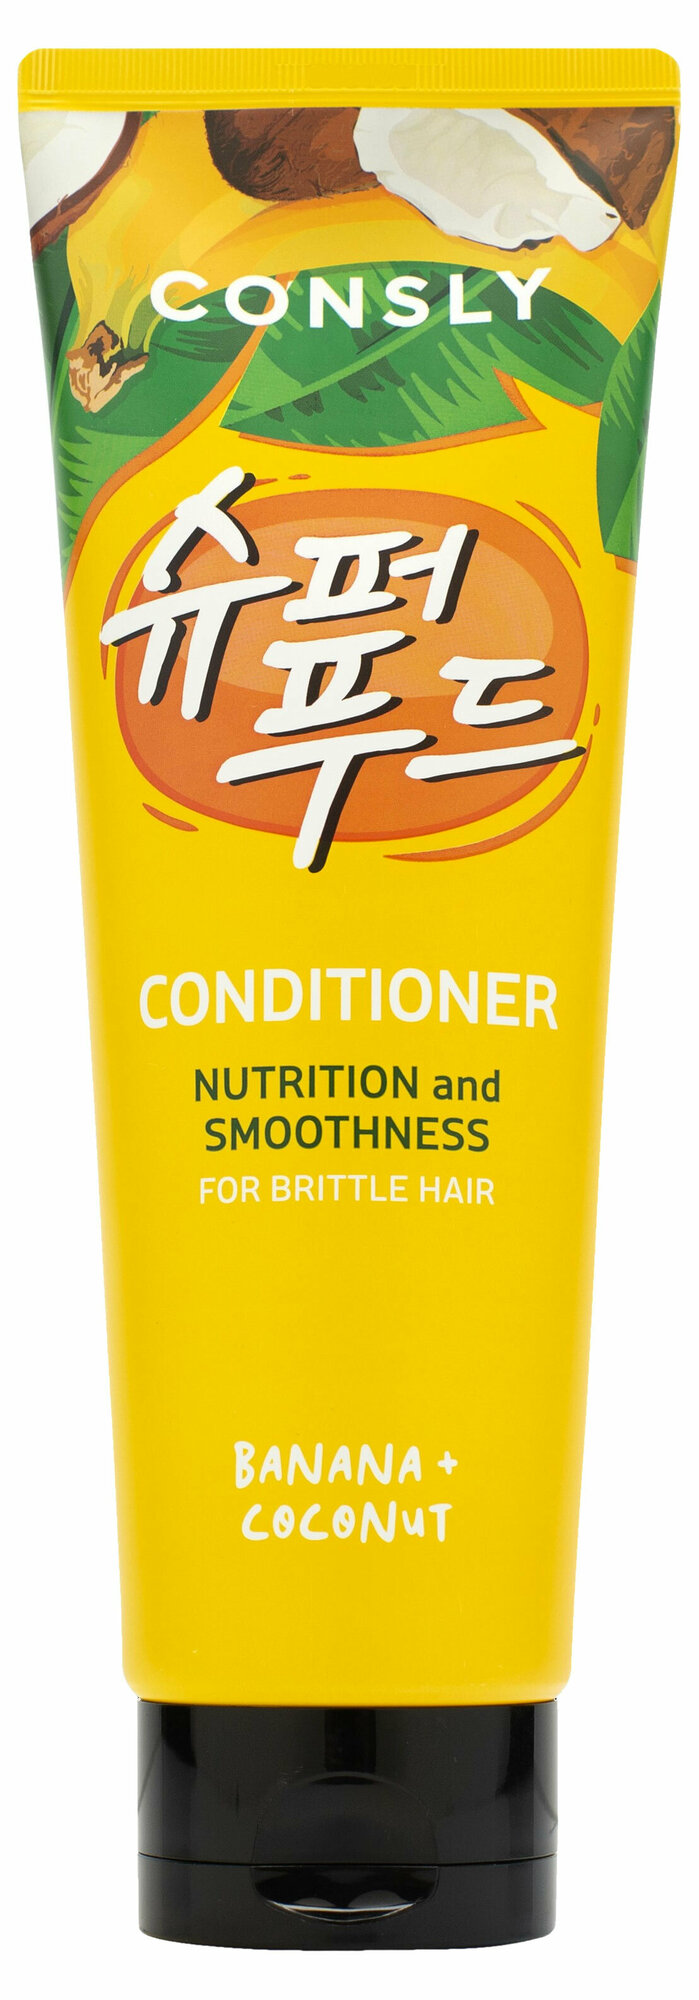 Кондиционер для волос CONSLY с экстрактом банана и кокосовой водой, 250 мл